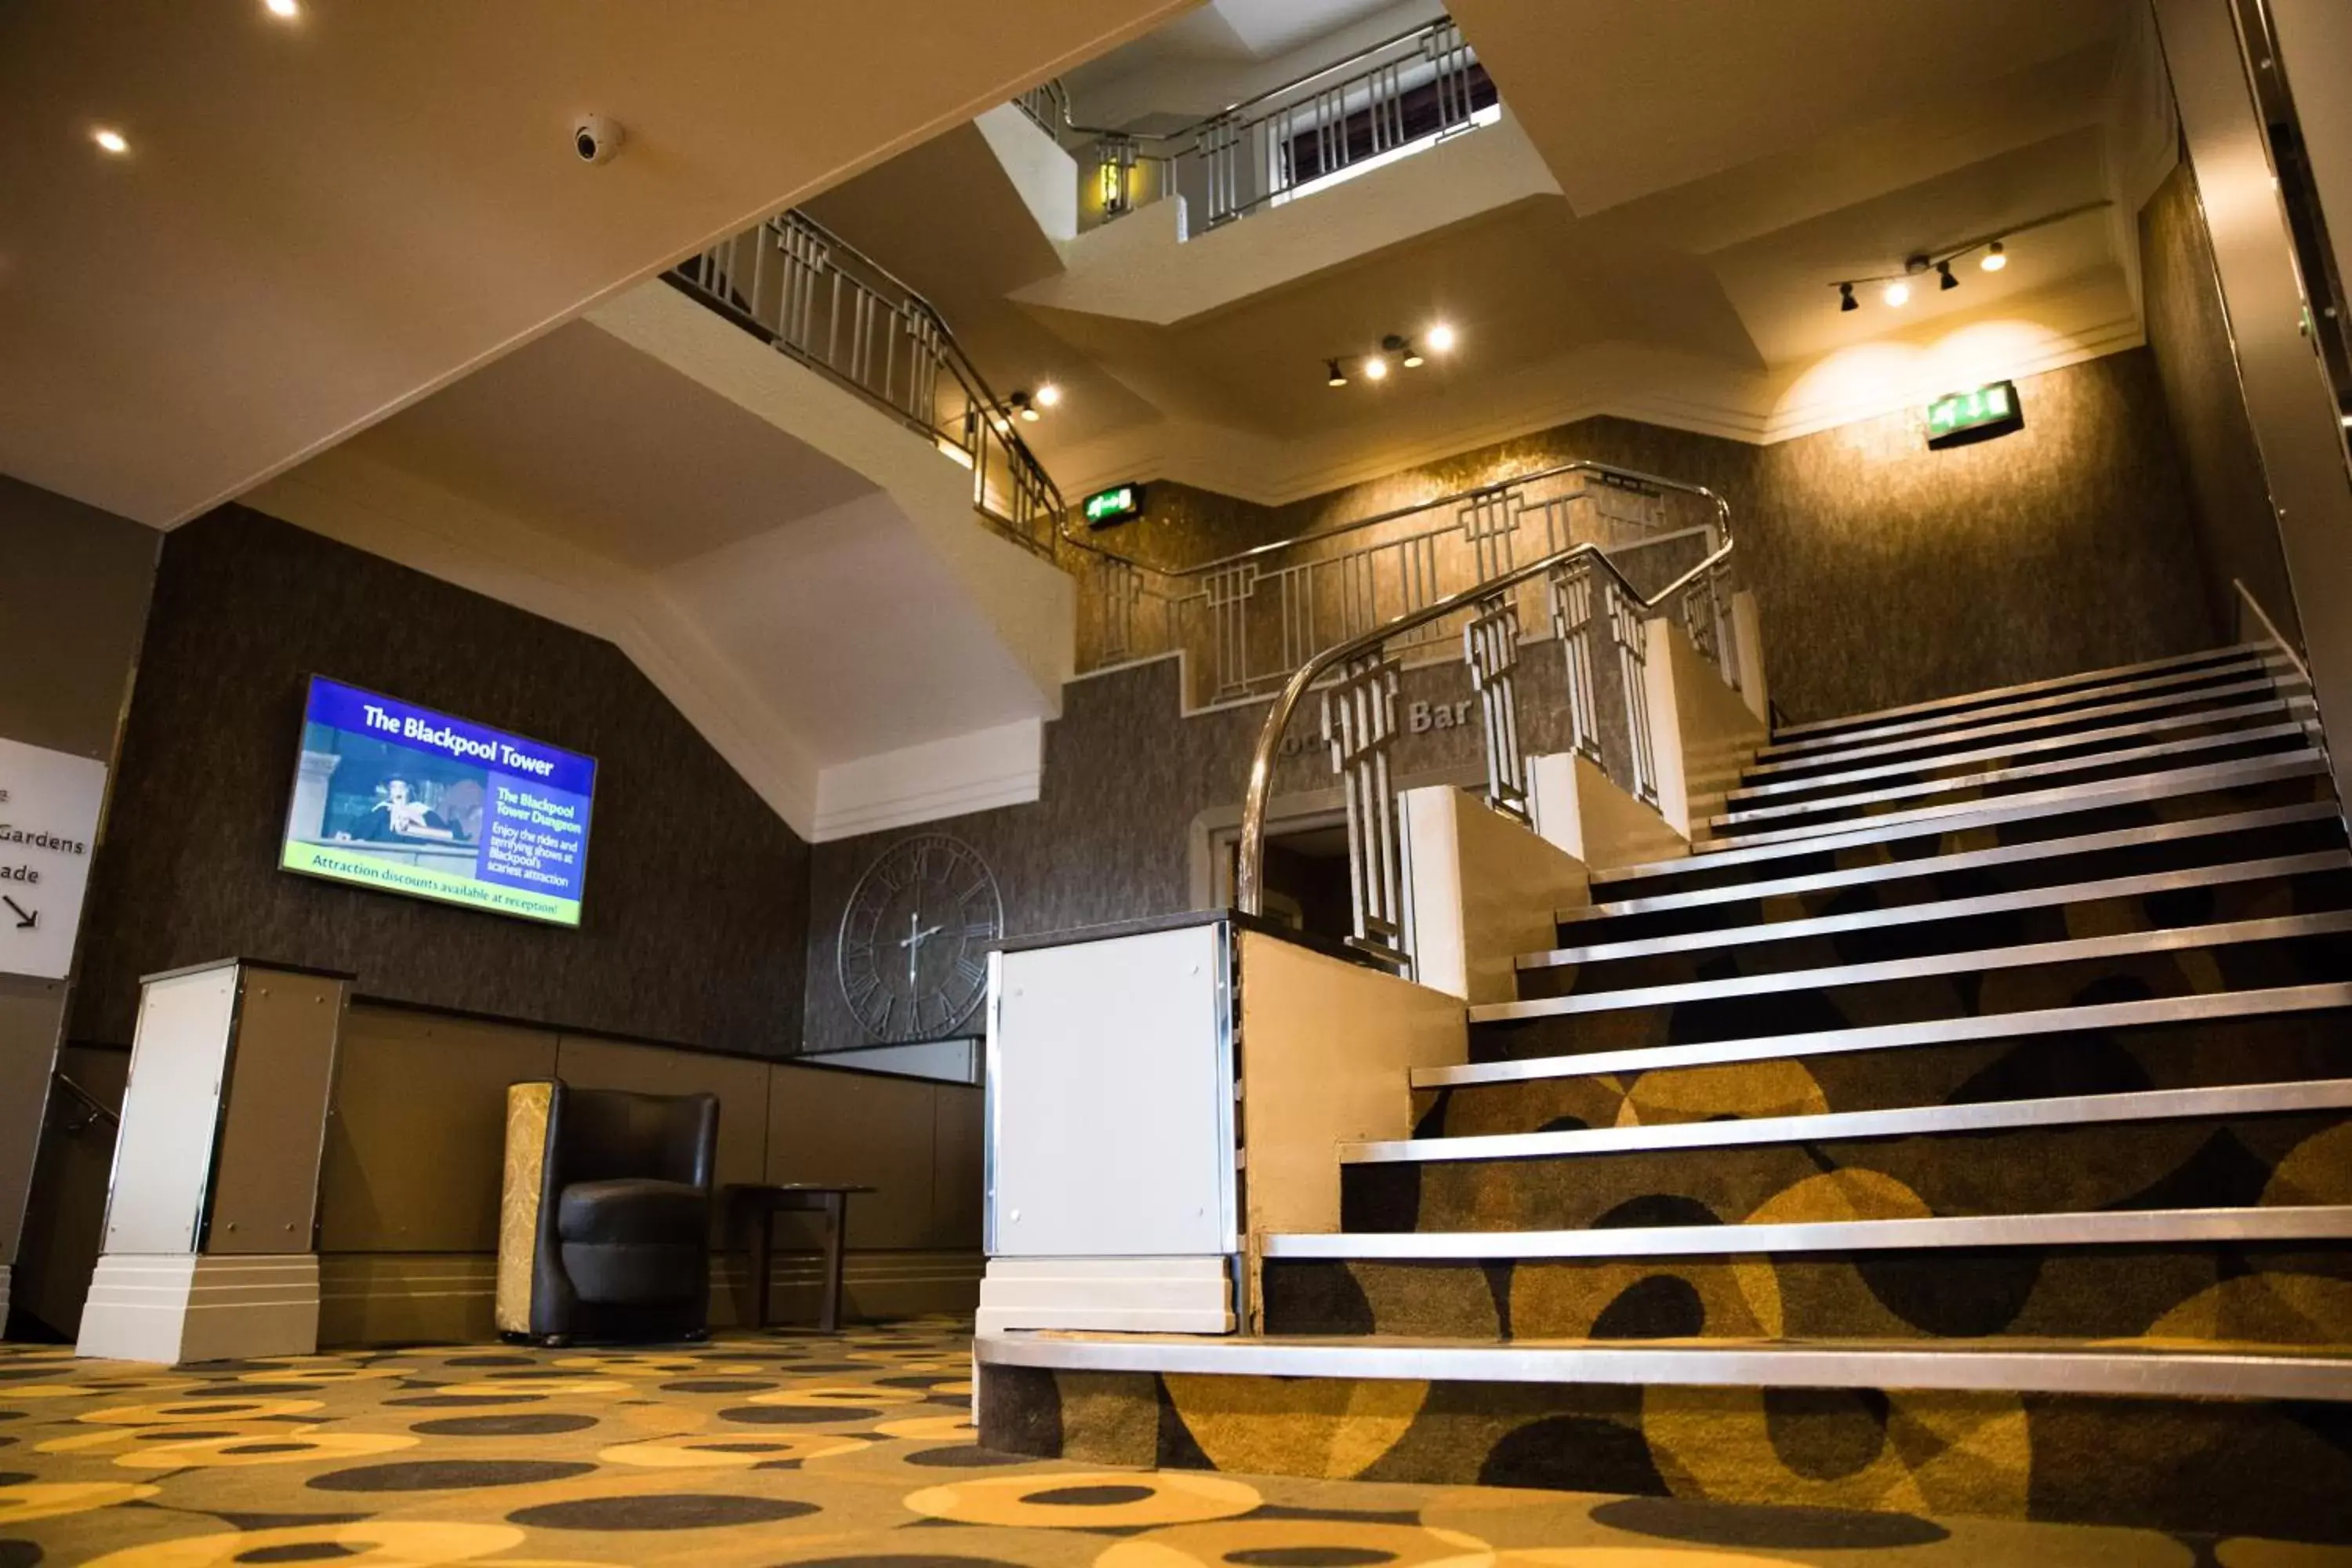 Lobby or reception, Lobby/Reception in Cliffs Hotel